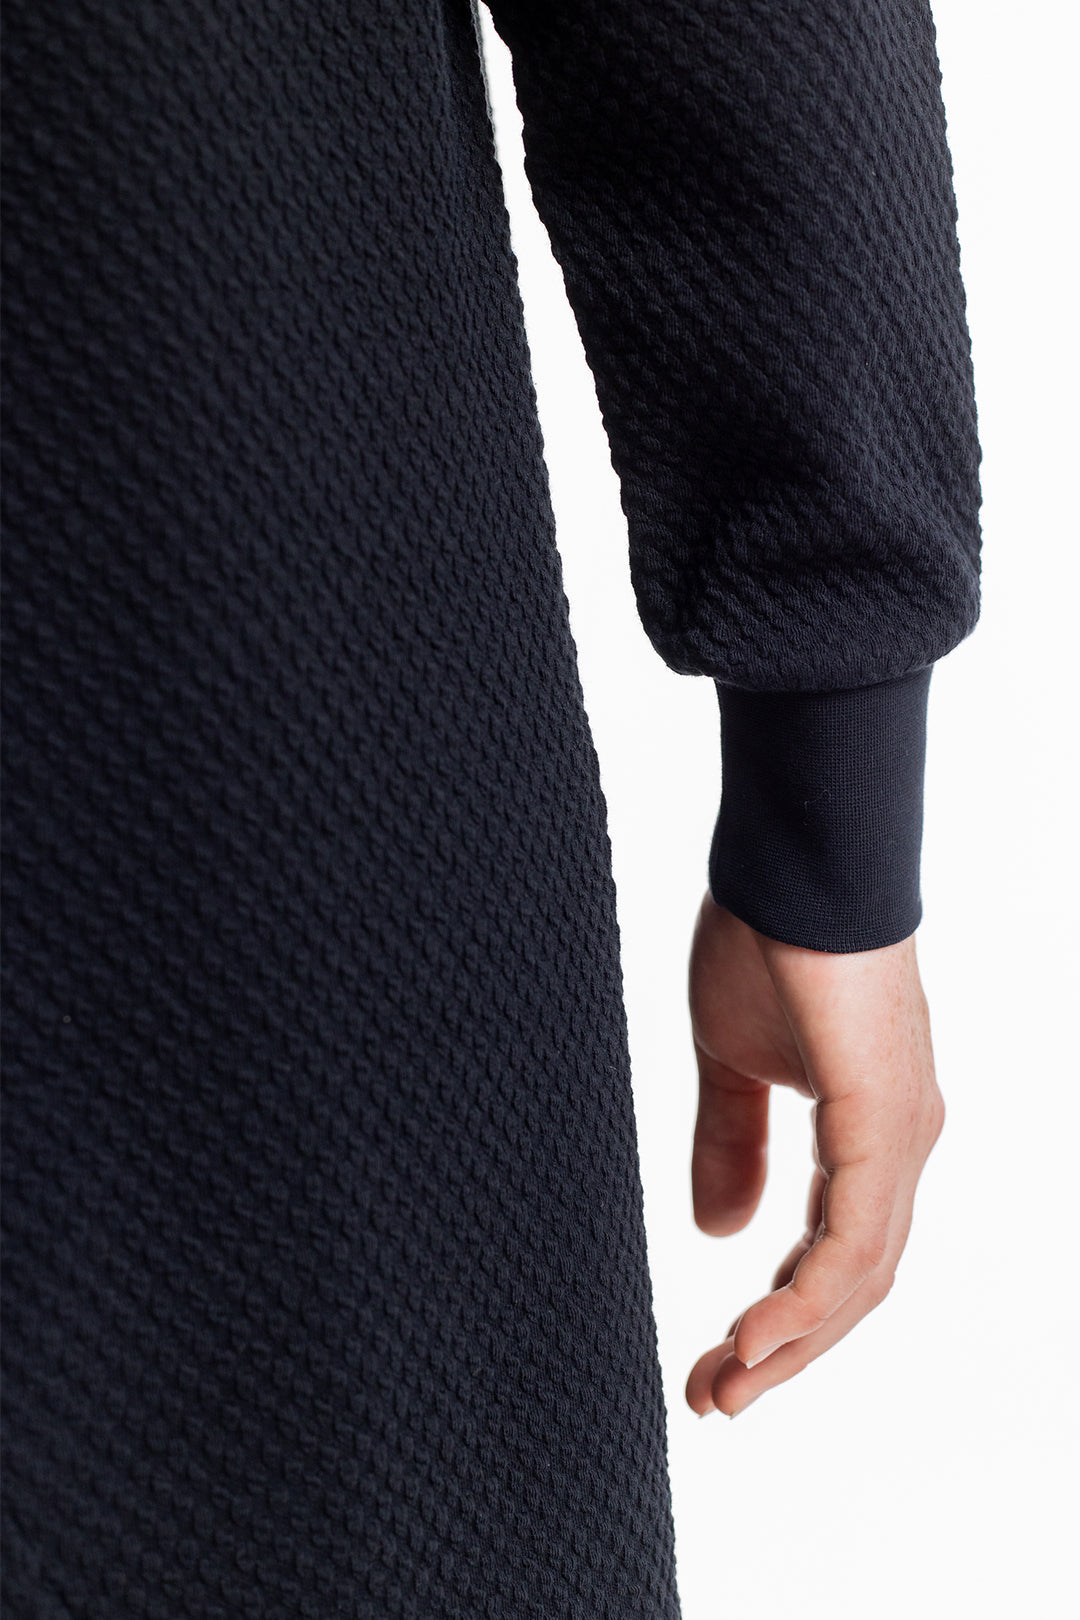 Robe sweat-shirt noire en coton 100% biologique de Rotholz